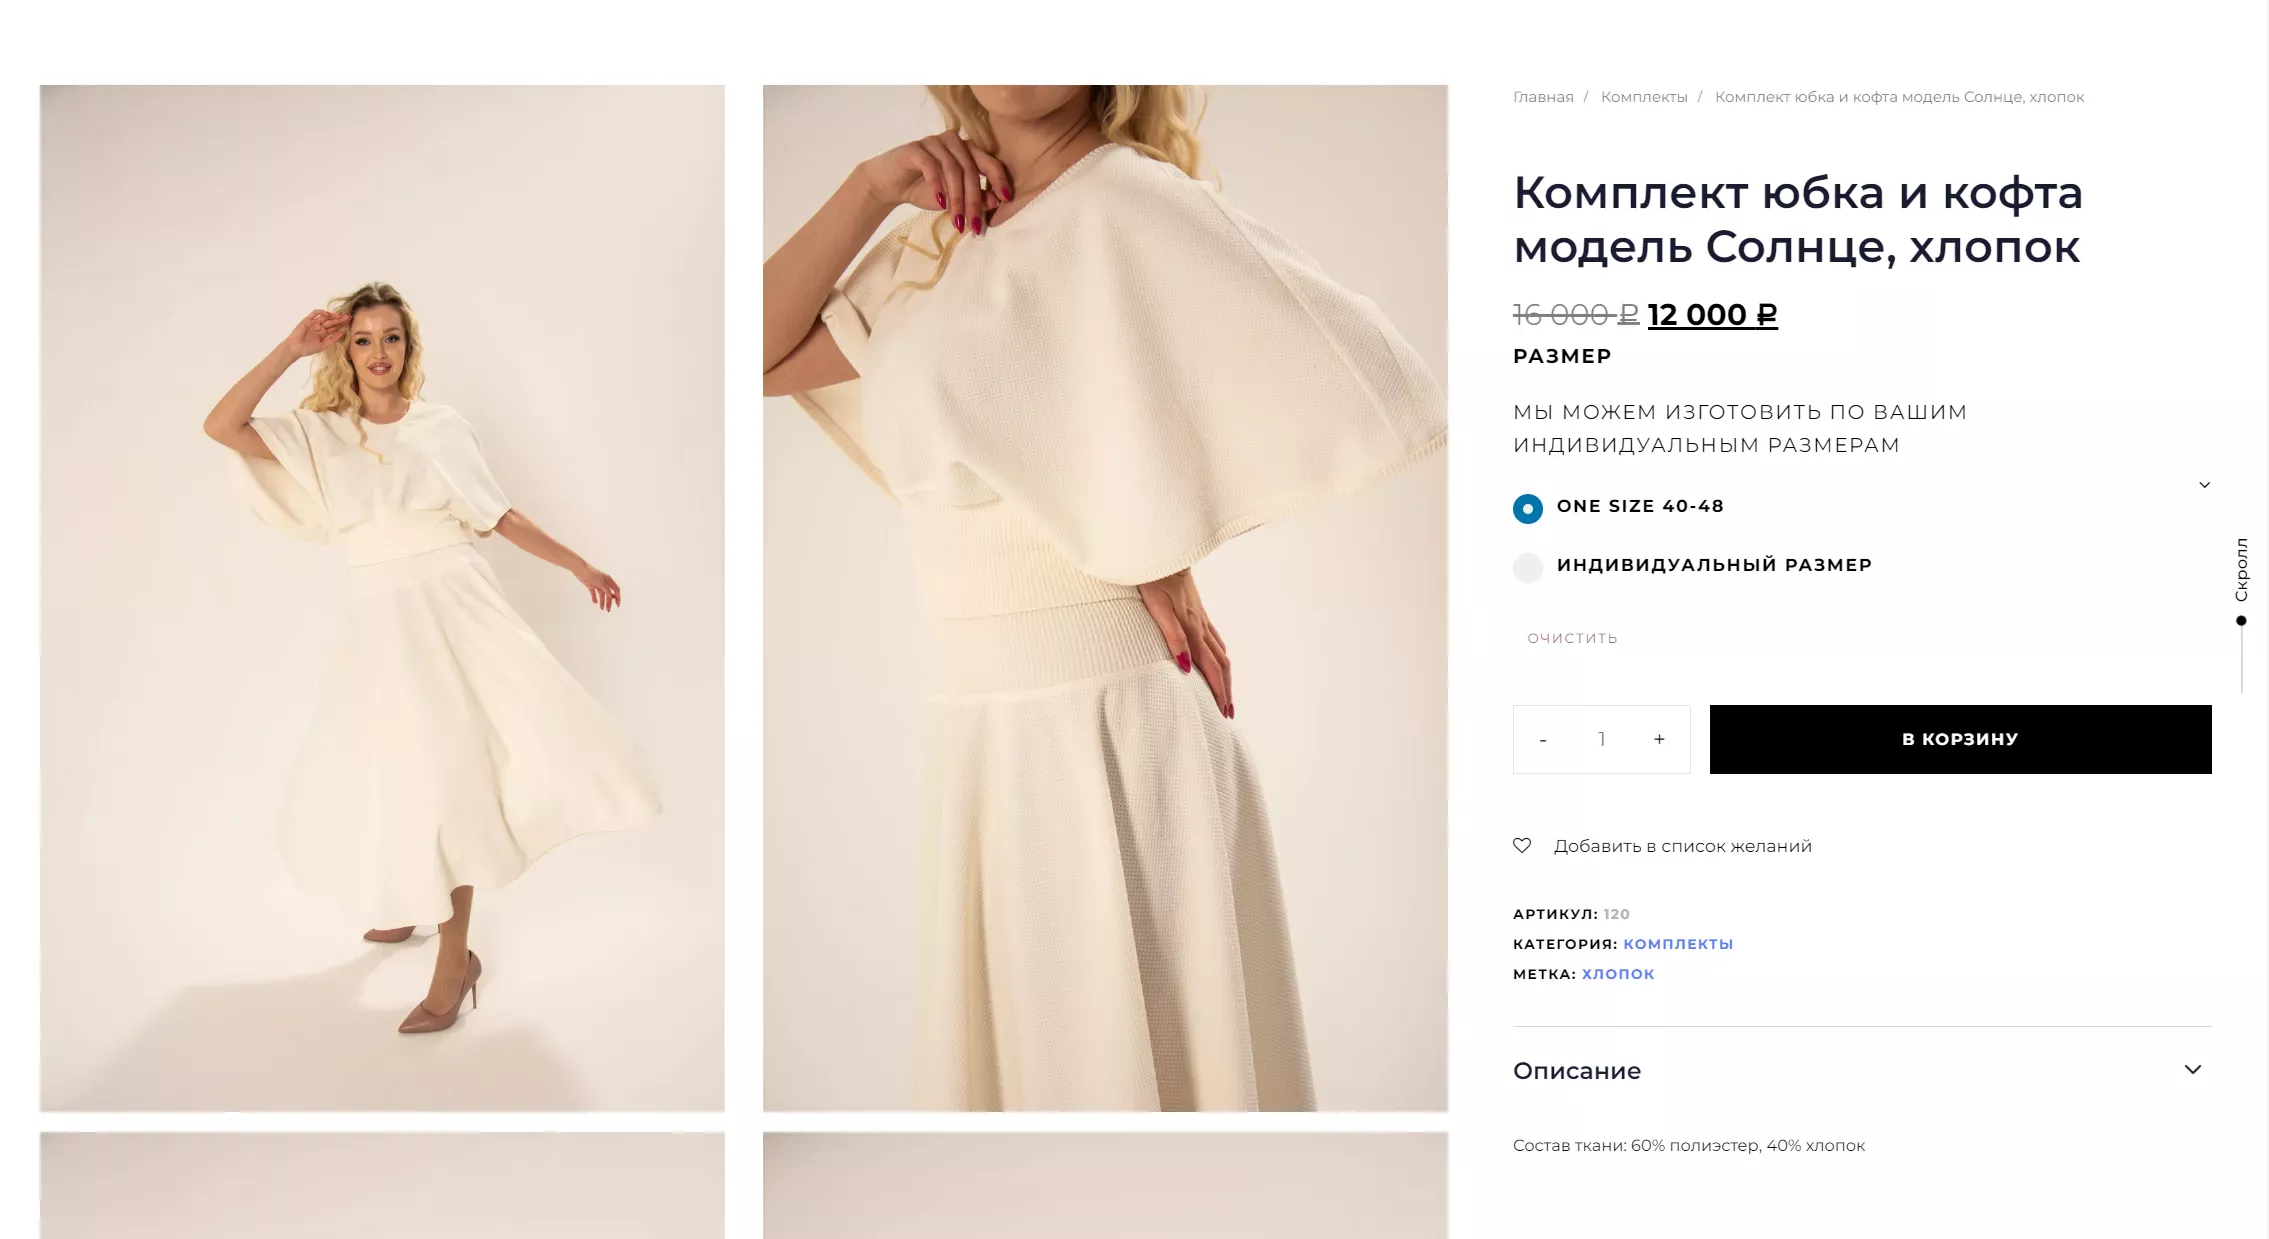 Интернет-магазин для российского бренда одежды ИЩИ ДоБРоТу